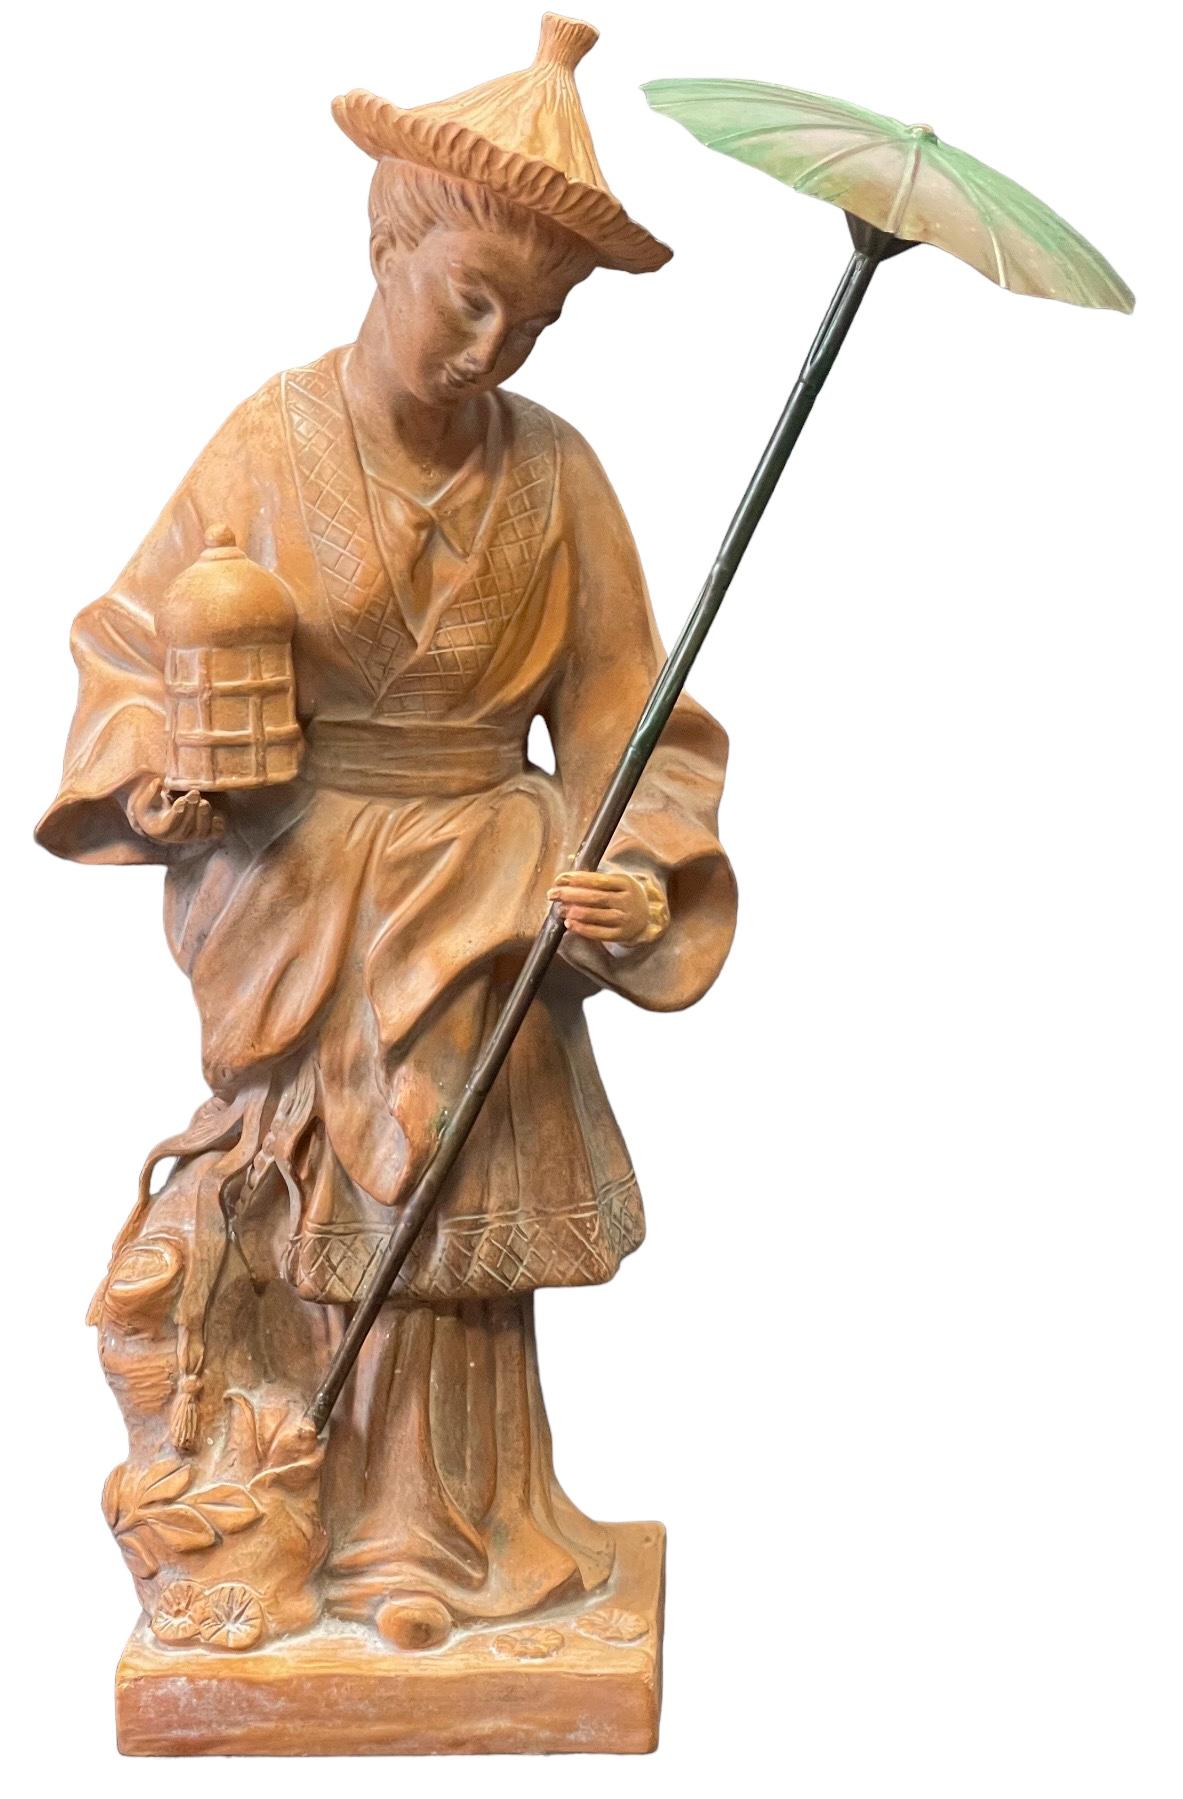 Dies ist ein 1970er großen Maßstab Chinoiserie Figur, die eine weibliche hält einen Messingschirm. Dieses Stück wird Chapman zugeschrieben und ist in sehr gutem Zustand. 